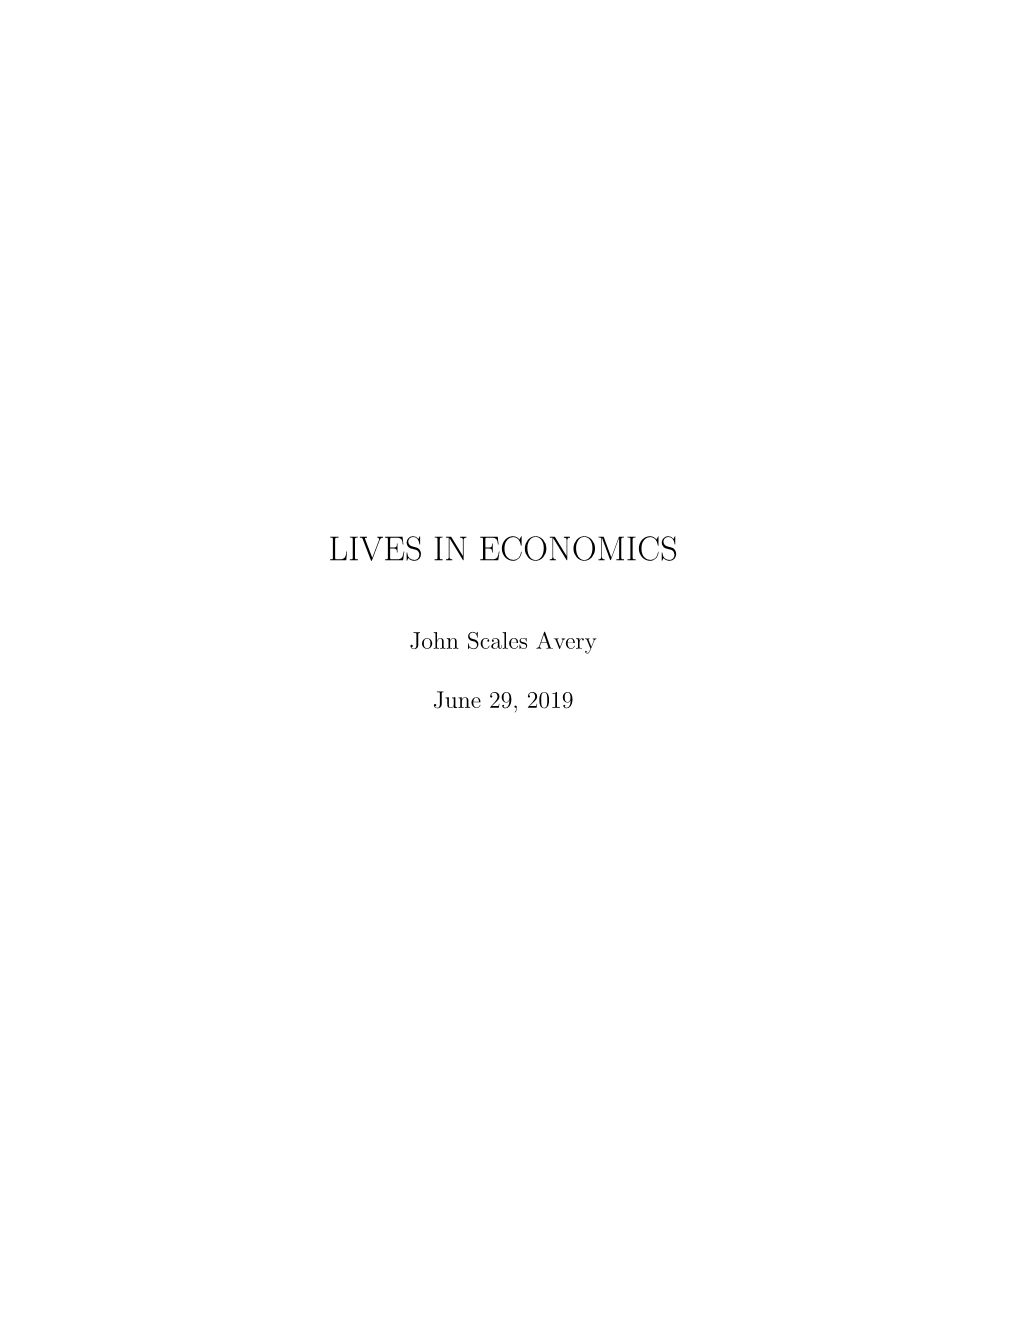 Lives in Economics